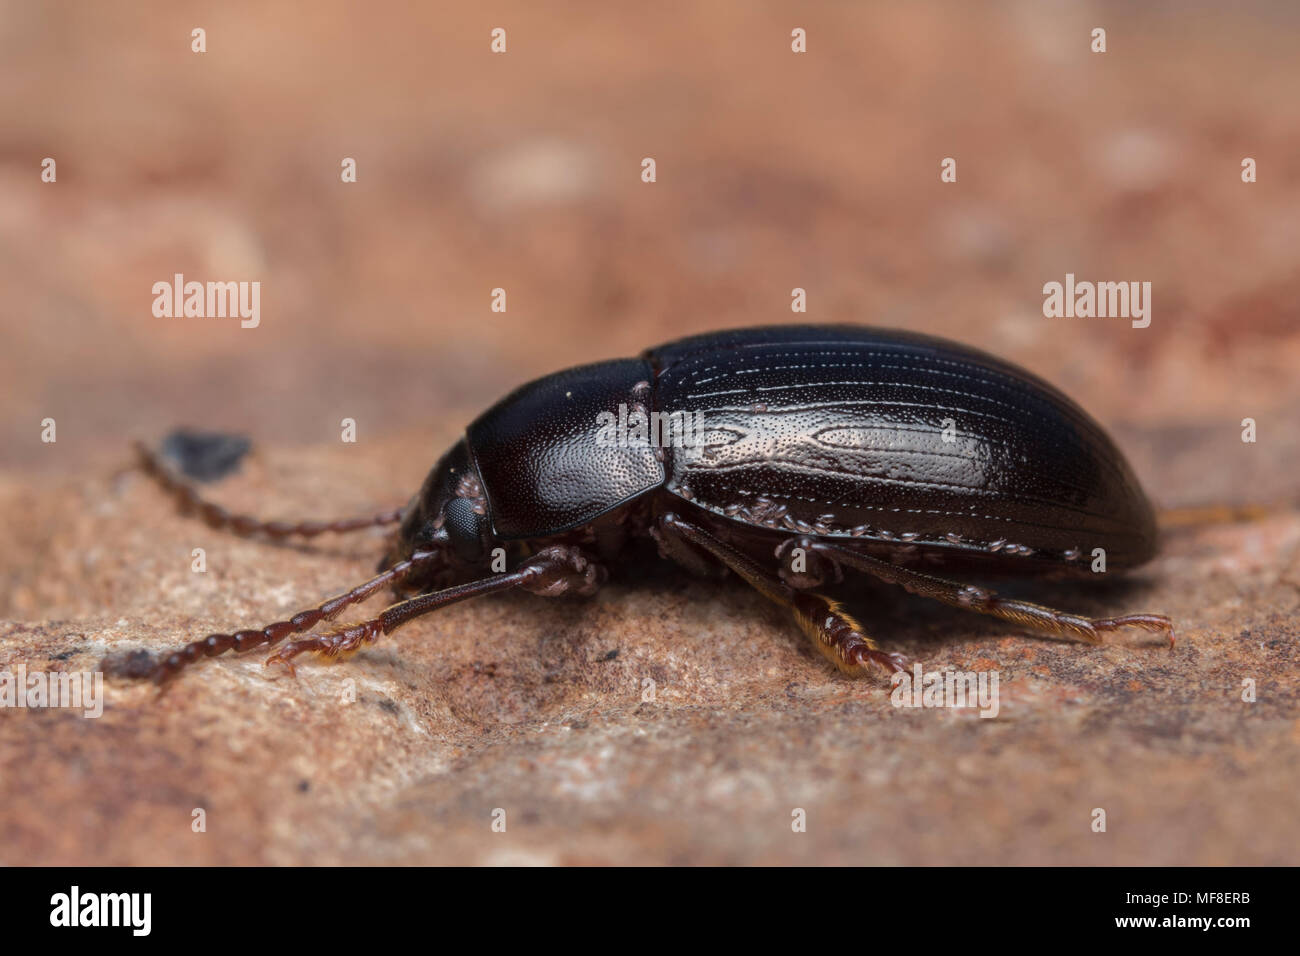 Darkling beetle reposant sur une pierre. Tipperary, Irlande Banque D'Images